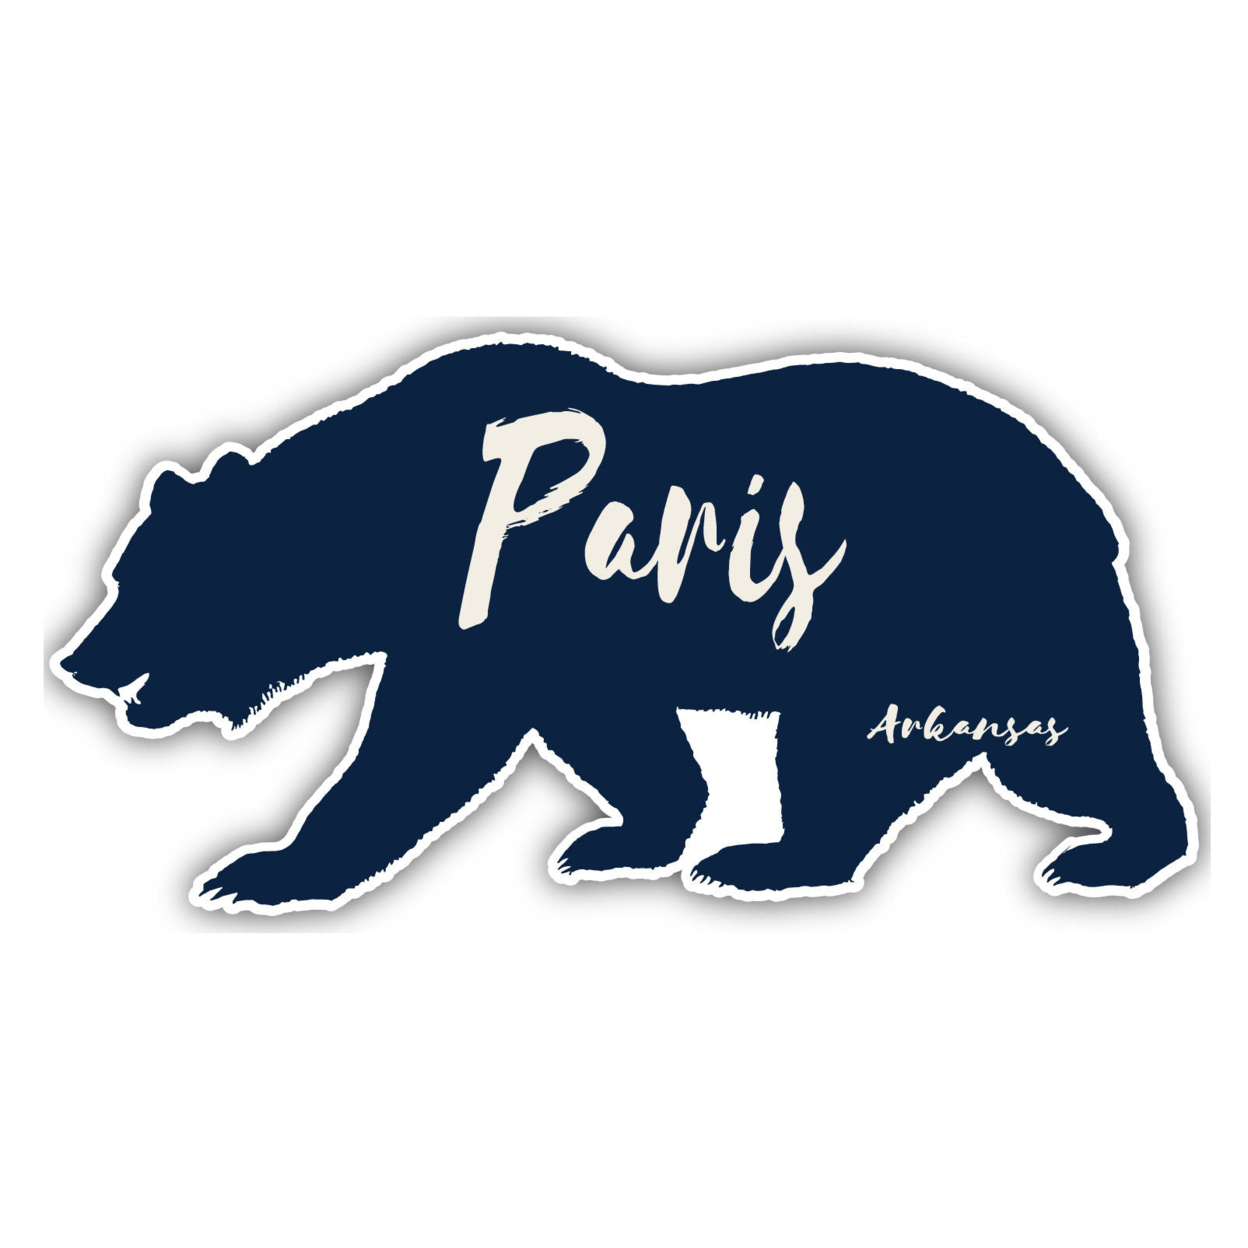 Paris Arkansas Souvenir Decorative Stickers (Choose Theme And Size) - Single Unit, 4-Inch, Bear